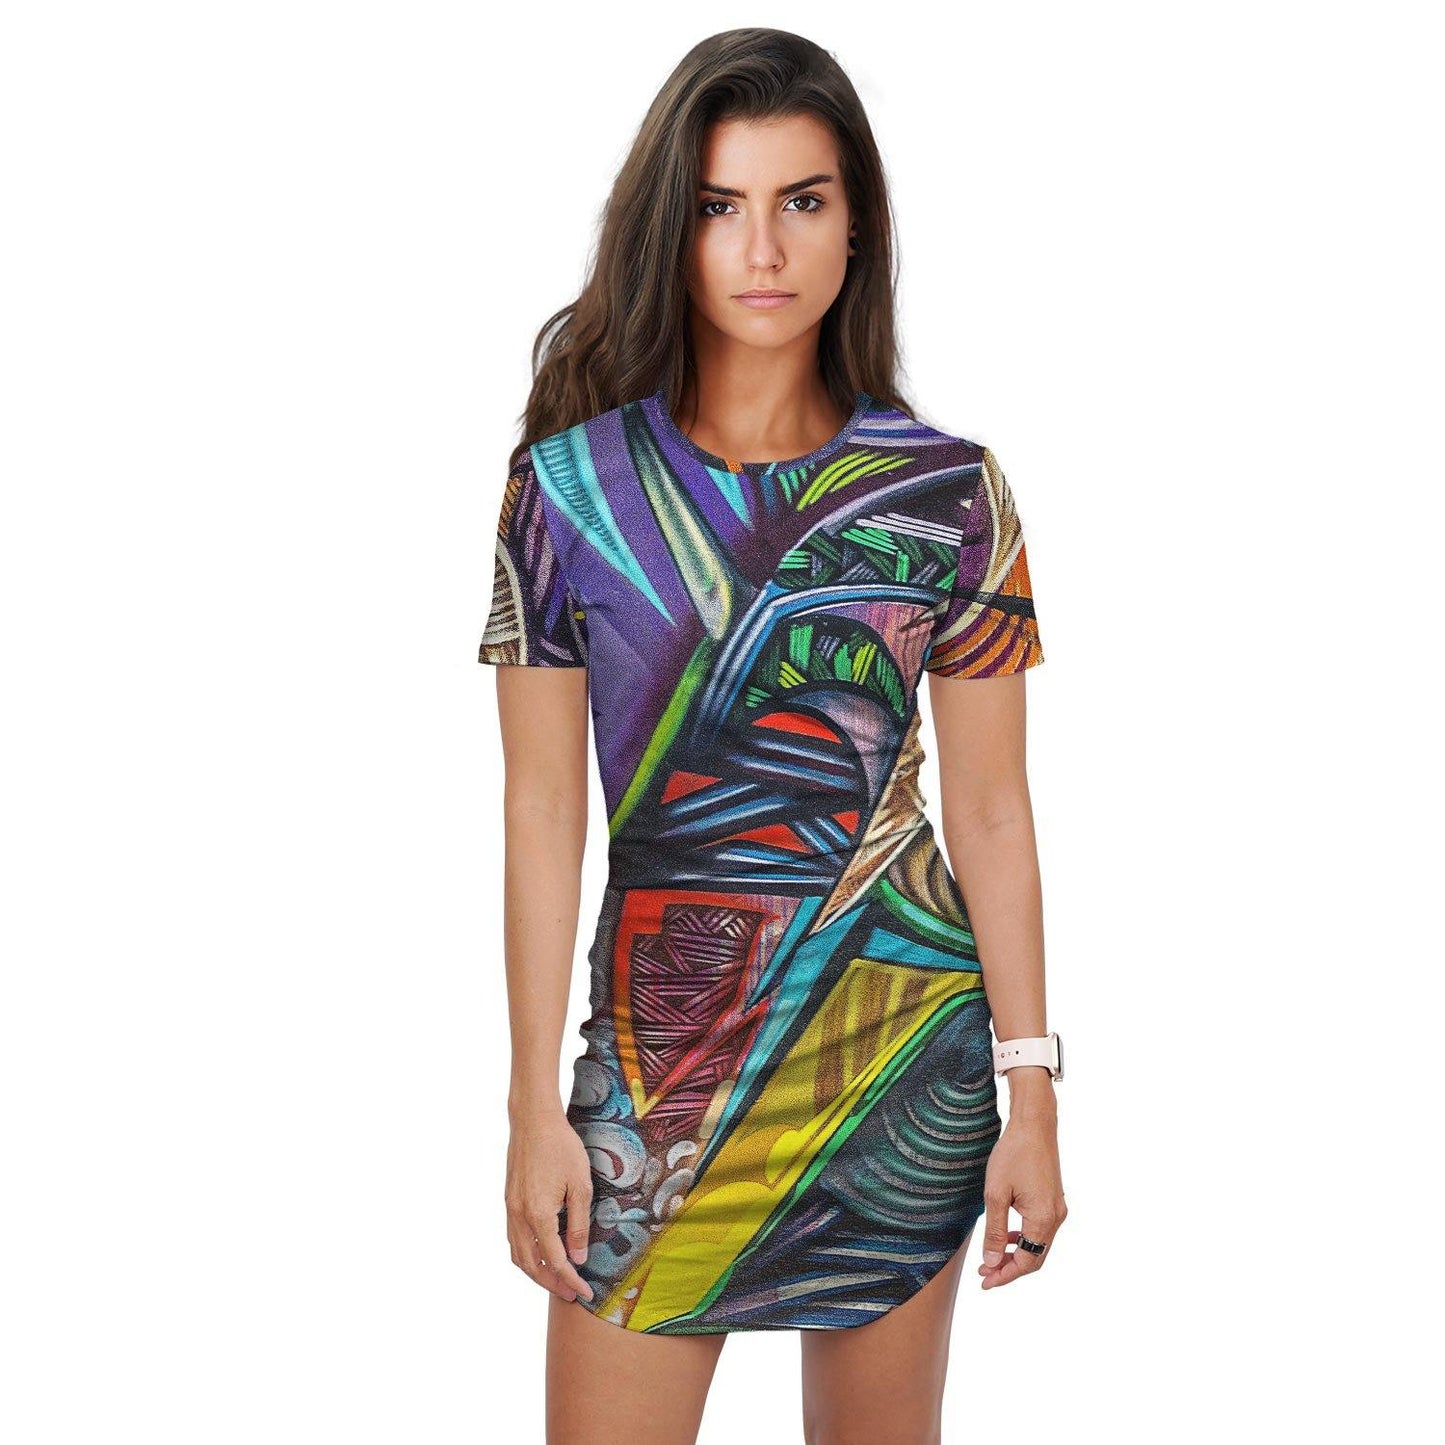 Abstract Graffiti Art T-Shirt Dress - Schoppix Gifts